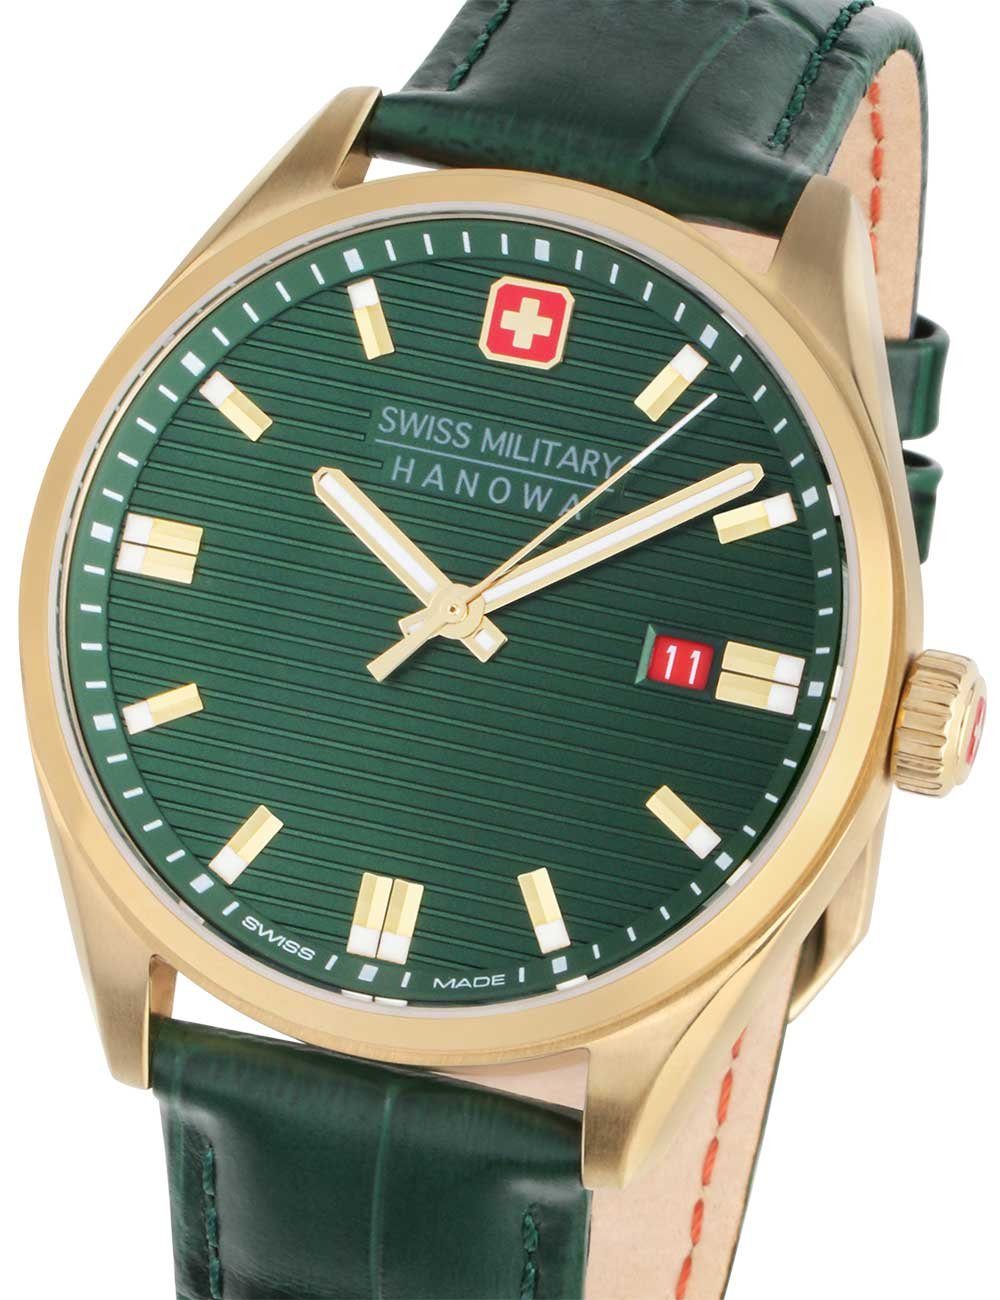 Schweizer SMWGB2200104 Swiss Uhr Hanowa ROADRUNNER, Military